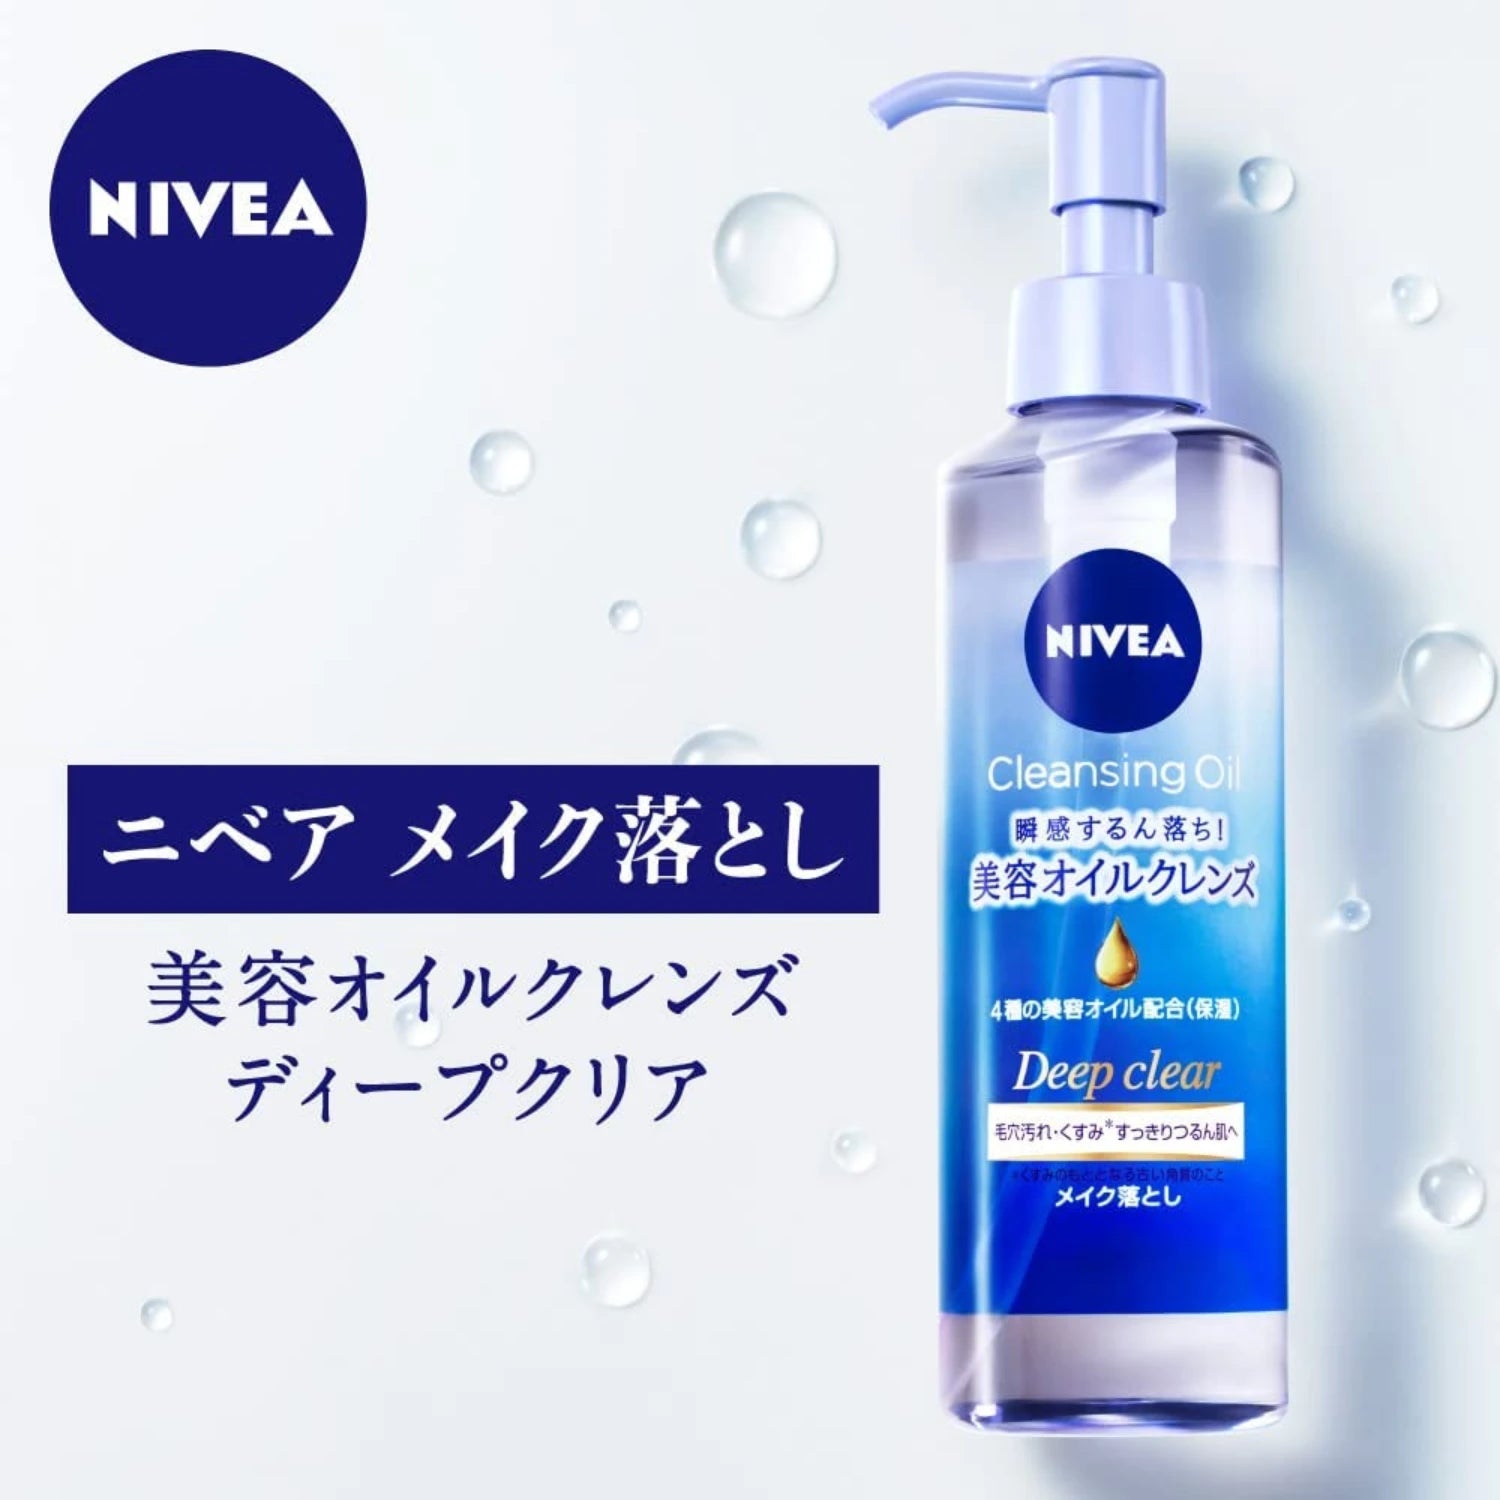 Nivea Japan Cleansing Oil Deep Clear 195ml - Buy Me Japan